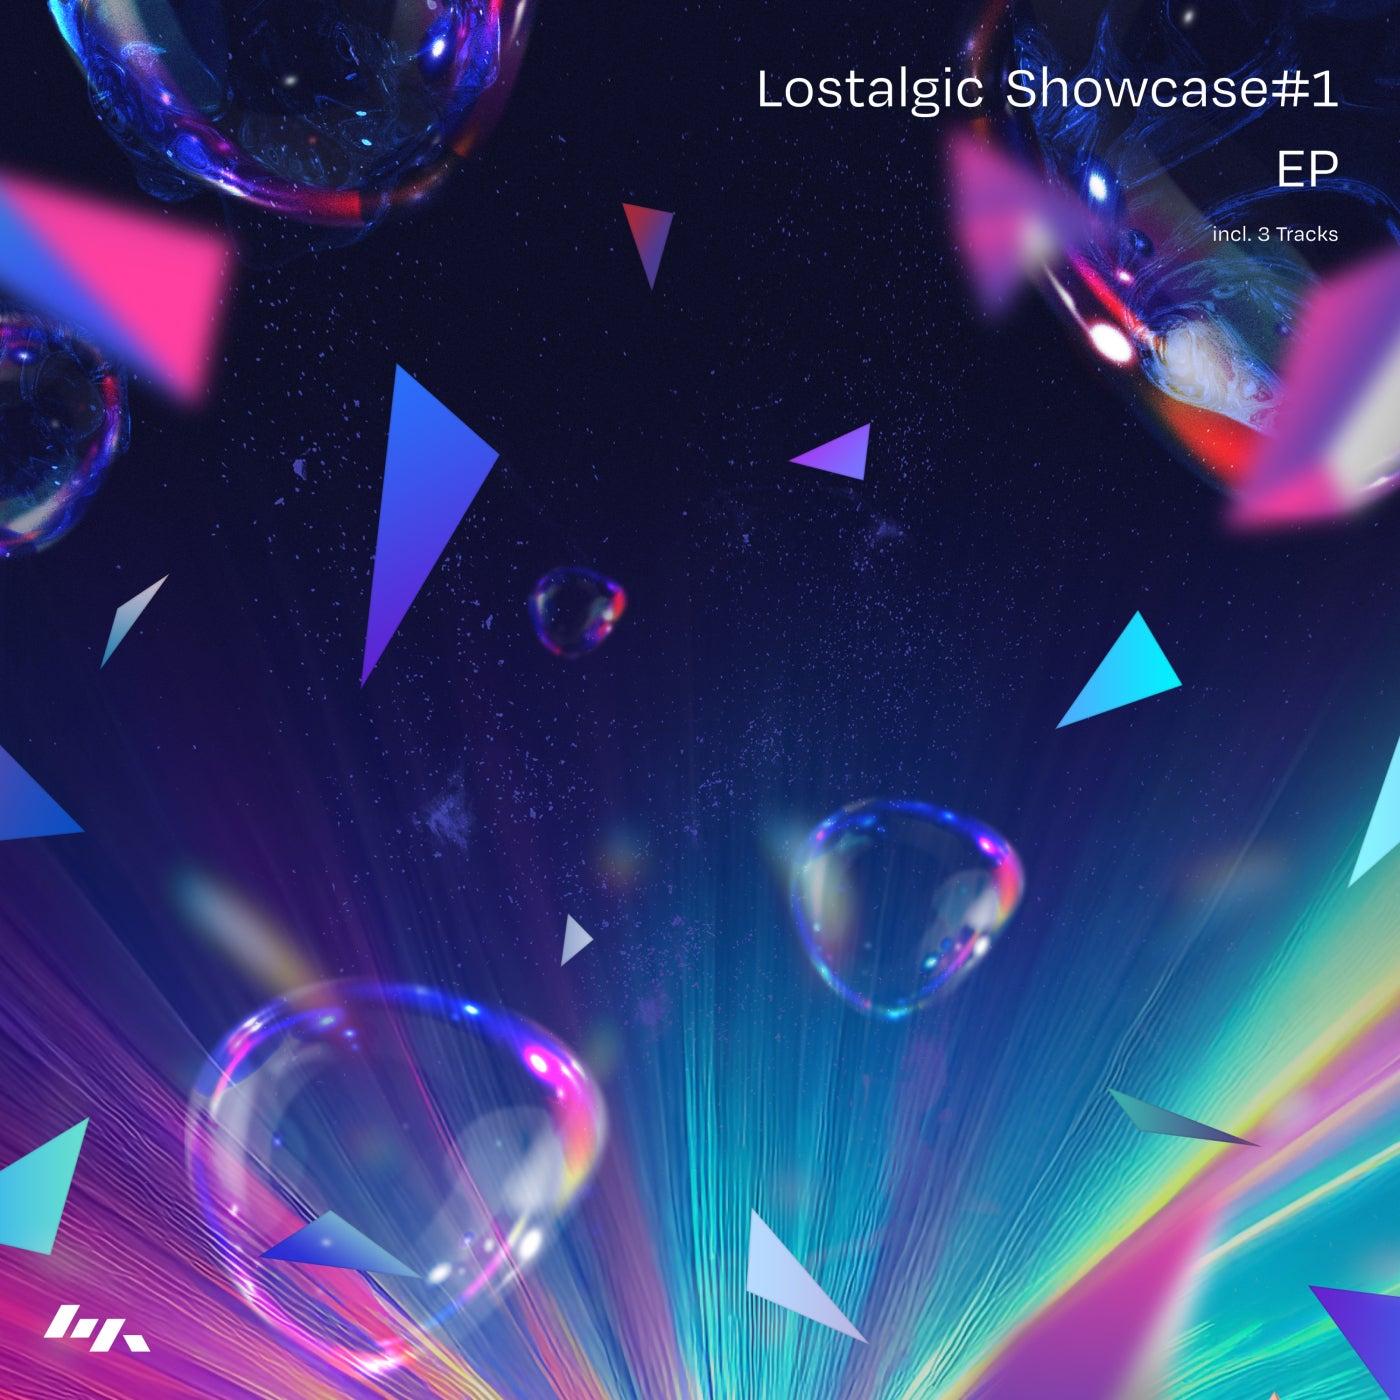 Lostalgic Showcase#1